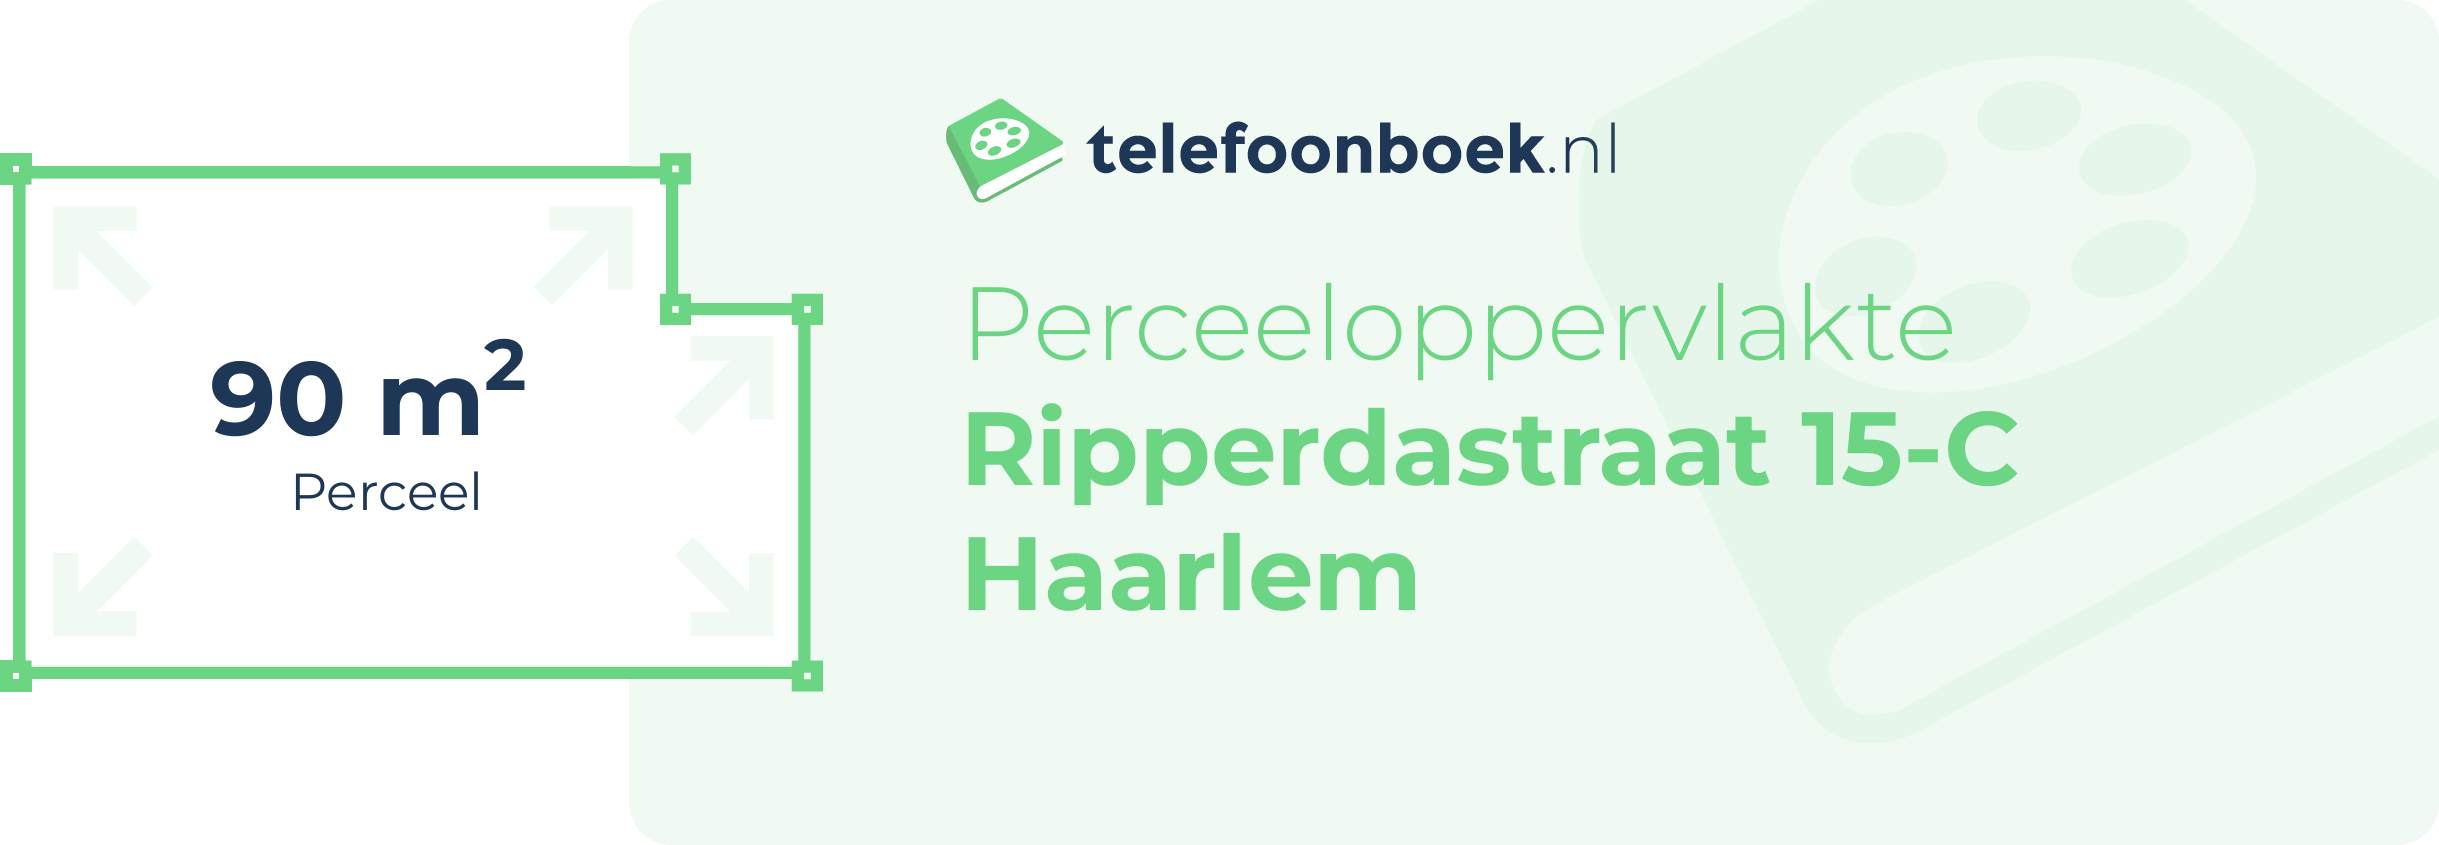 Perceeloppervlakte Ripperdastraat 15-C Haarlem